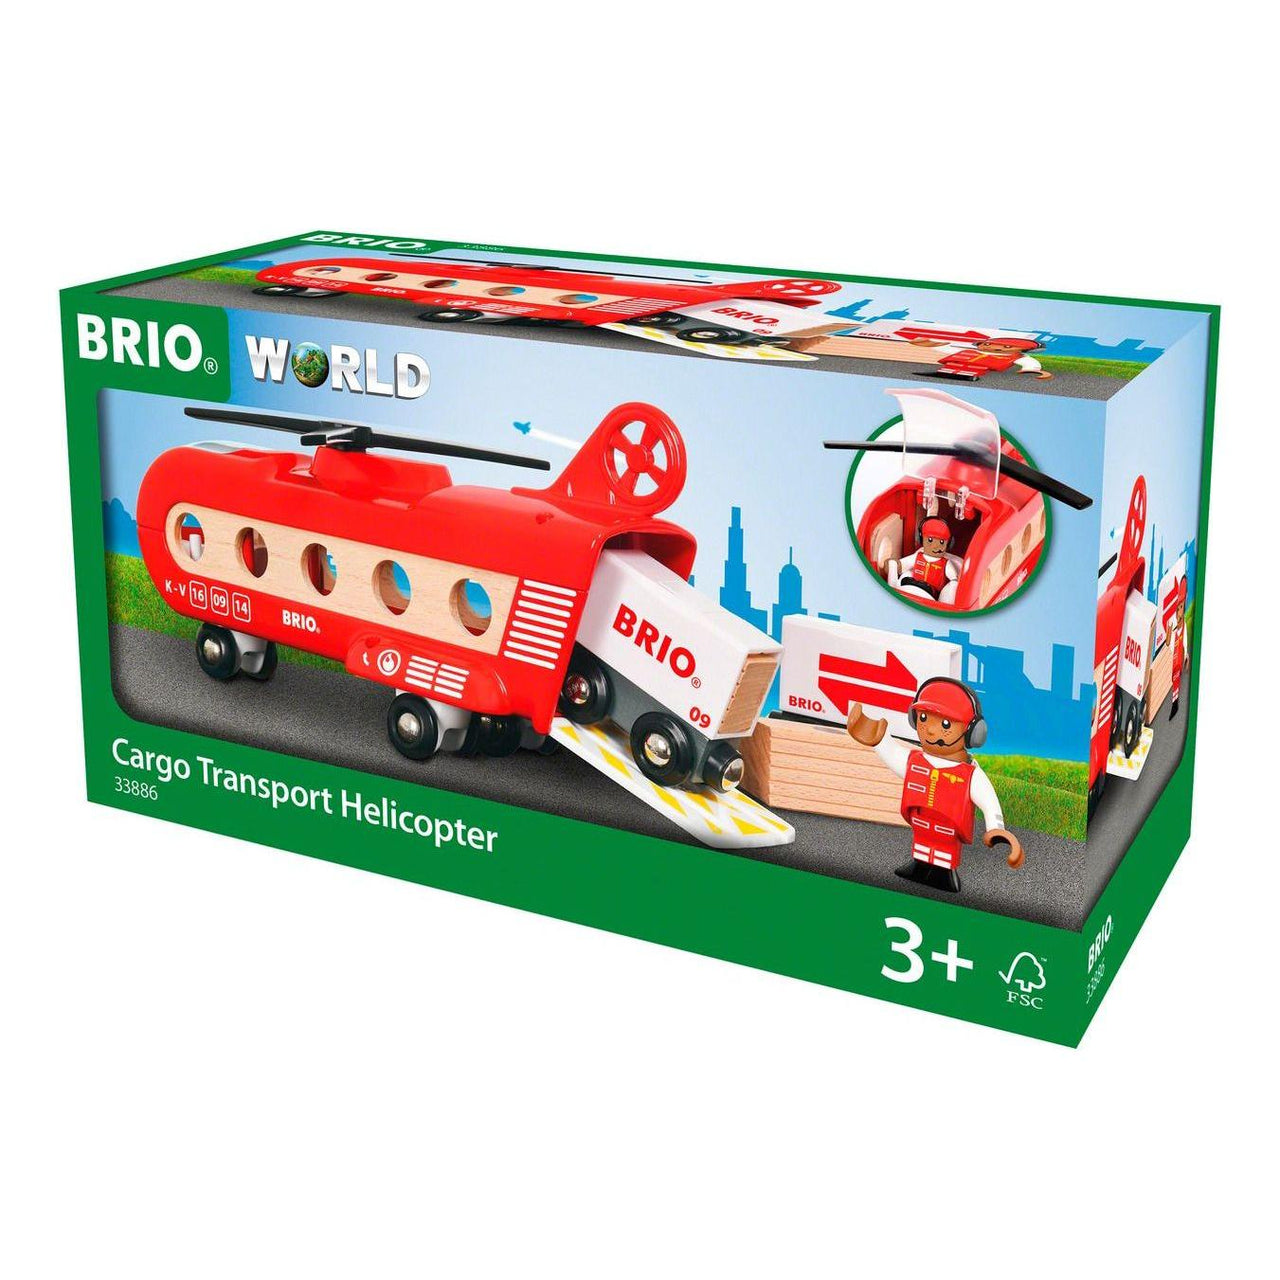 Brio Cargo Transport Helicopter BRIO